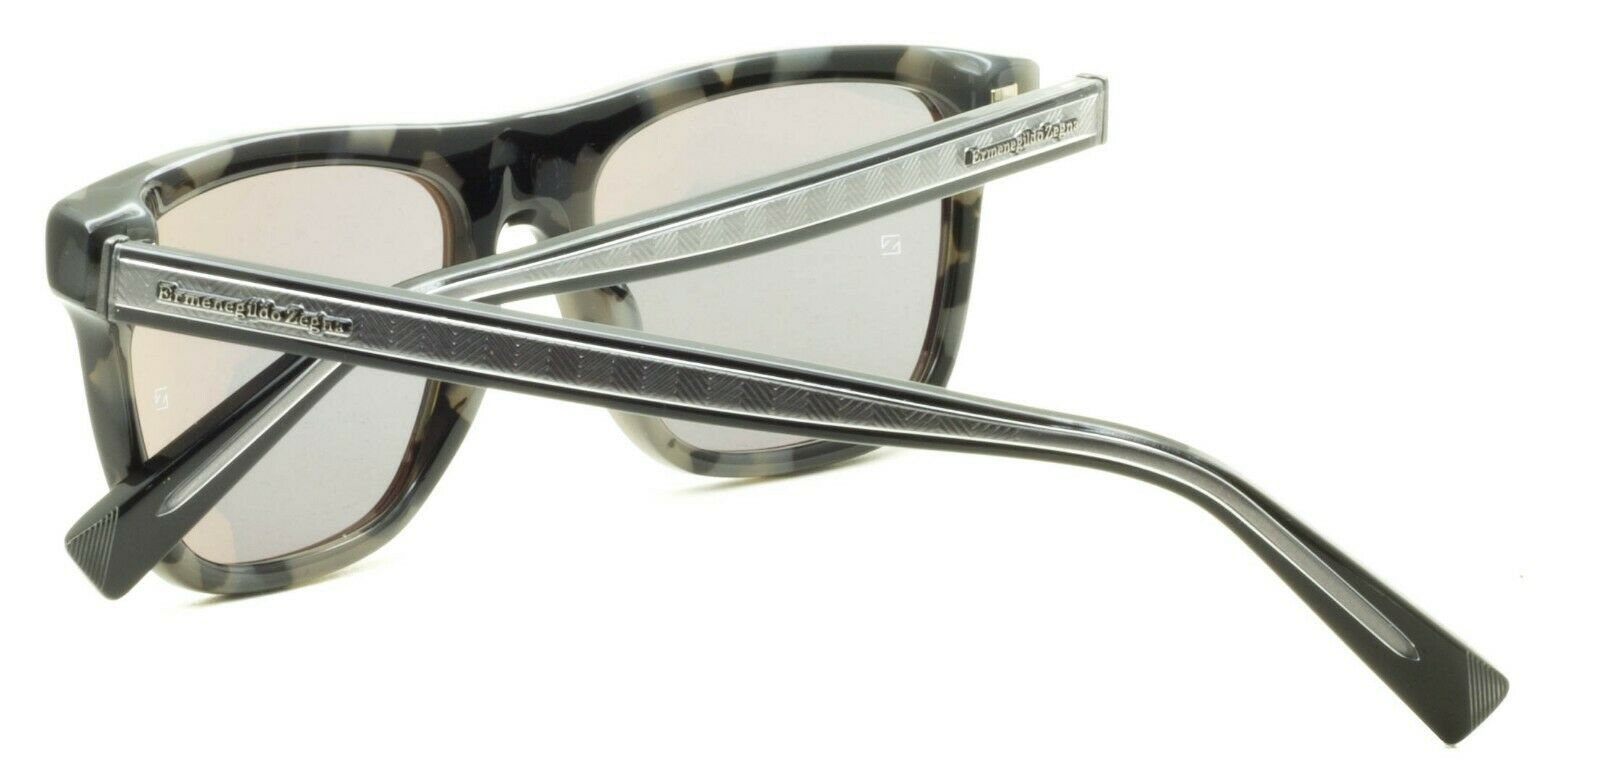 Ermenegildo Zegna EZ 0094 55C Sunglasses Shades Glasses 100% UV New BNIB - Italy